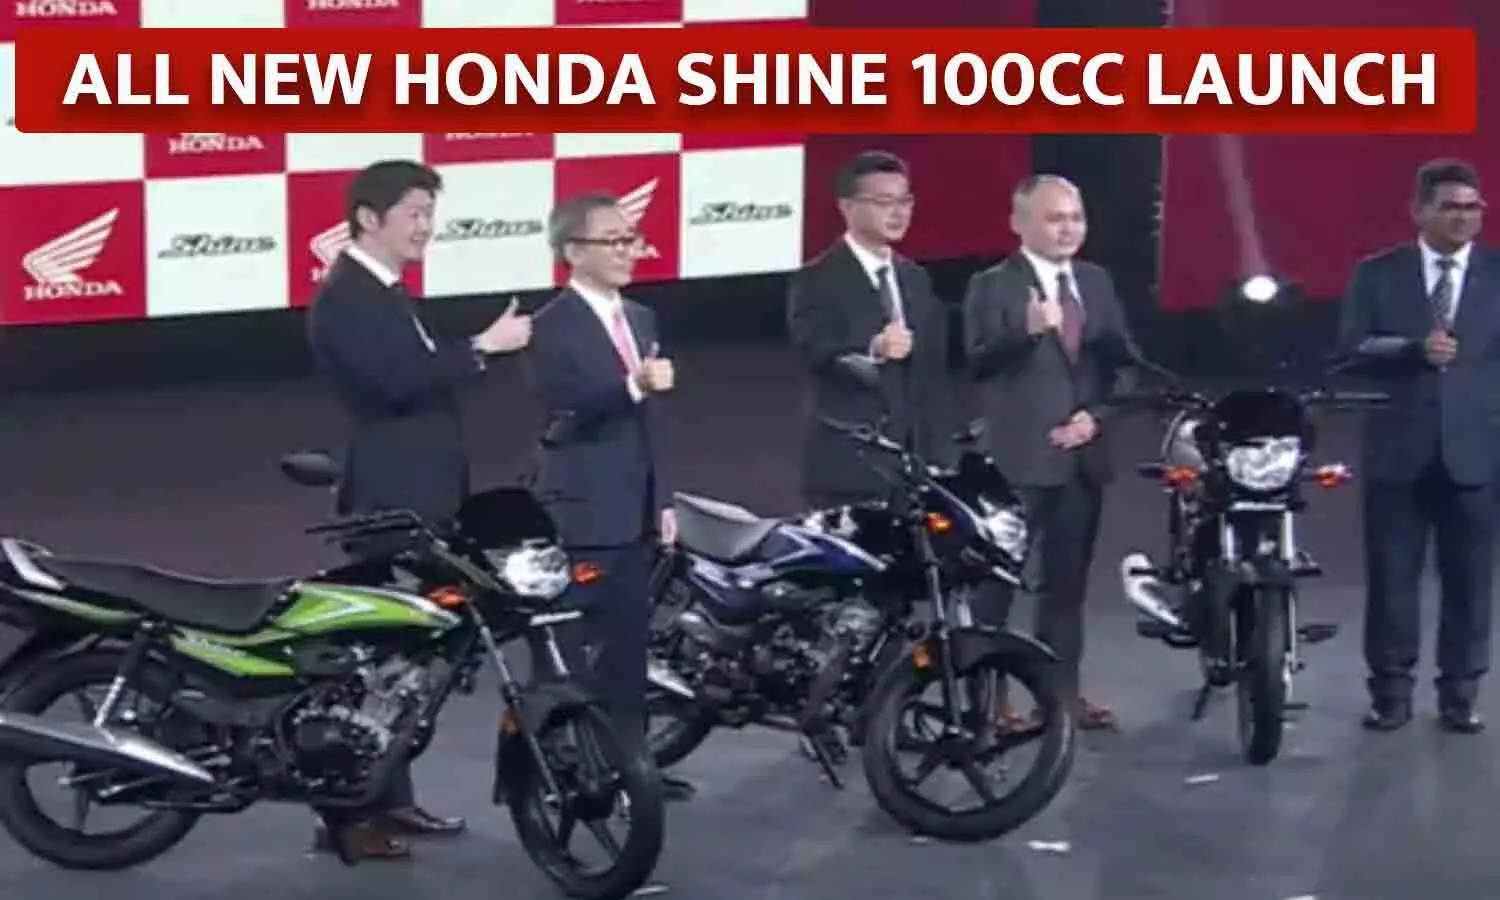 होंडा की सबसे सस्ती मोटरसाइकिल लॉन्च: 100cc इंजन वाली All New Honda Shine की बुकिंग आज से शुरू, कीमत महज इतने रुपए